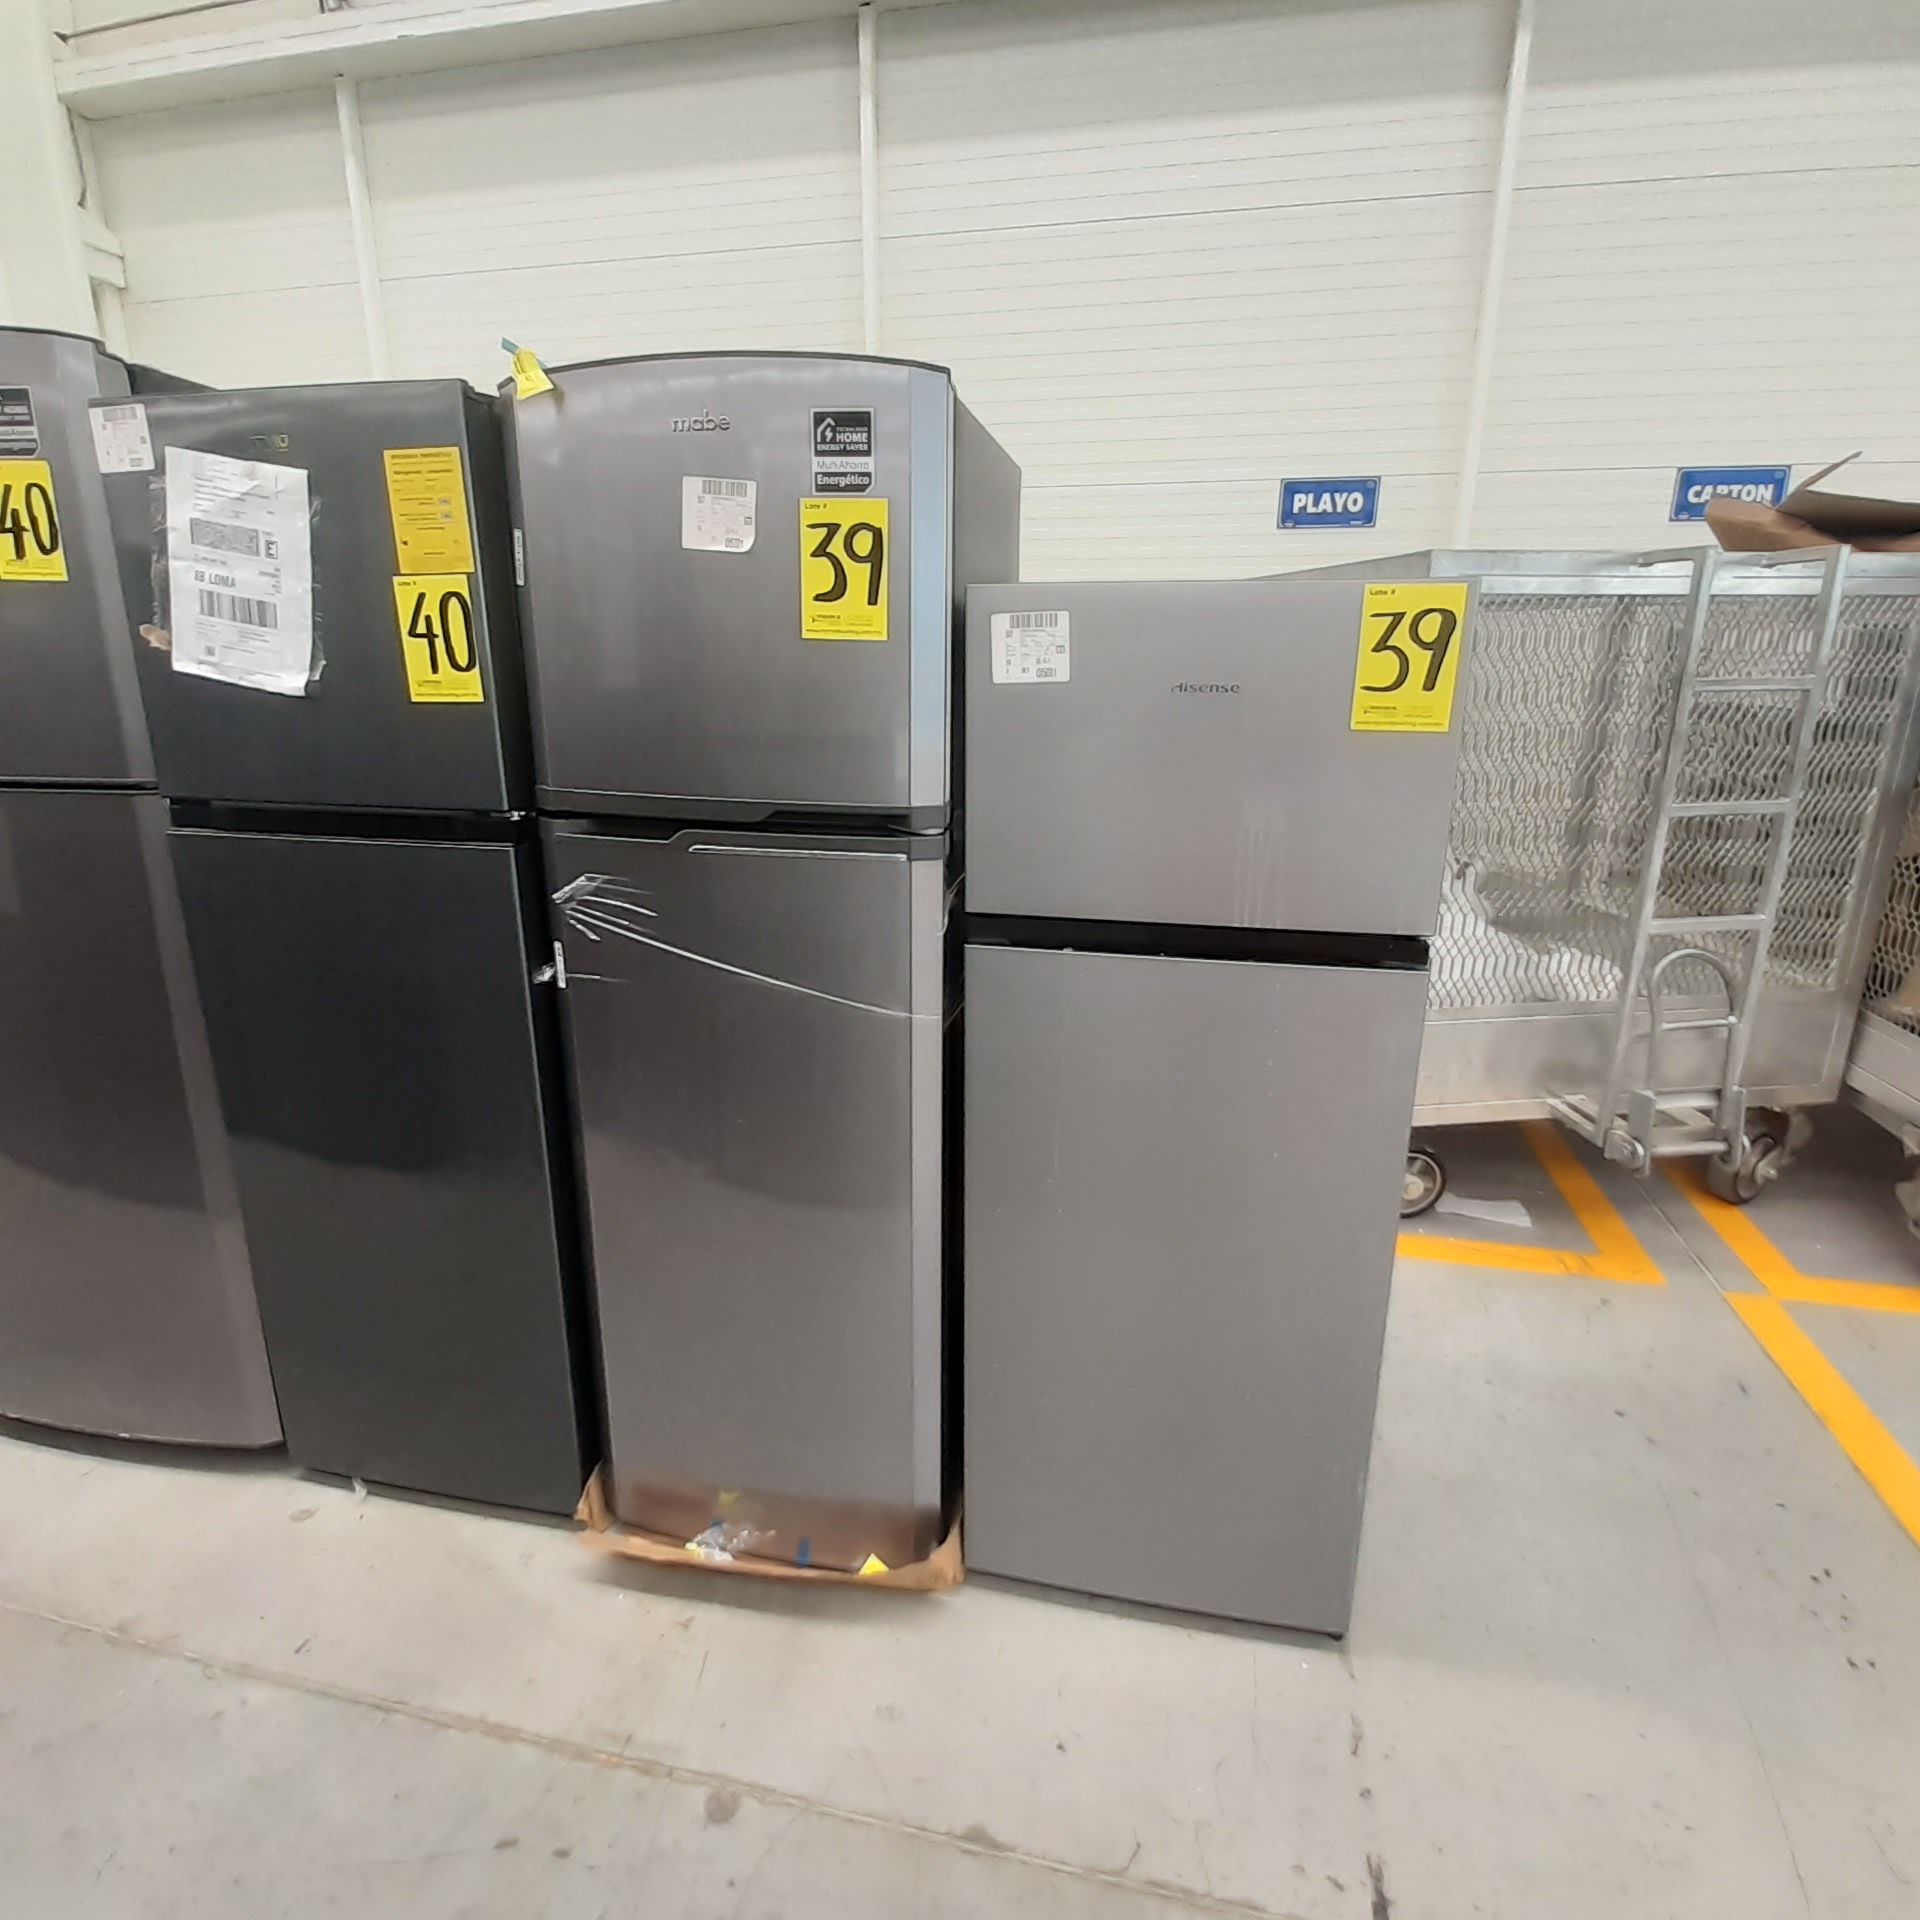 Lote De 2 Refrigeradores Contiene: 1 Refrigerador Marca Mabe, 1 Refrigerador Marca Hisense, Distinto - Image 2 of 14